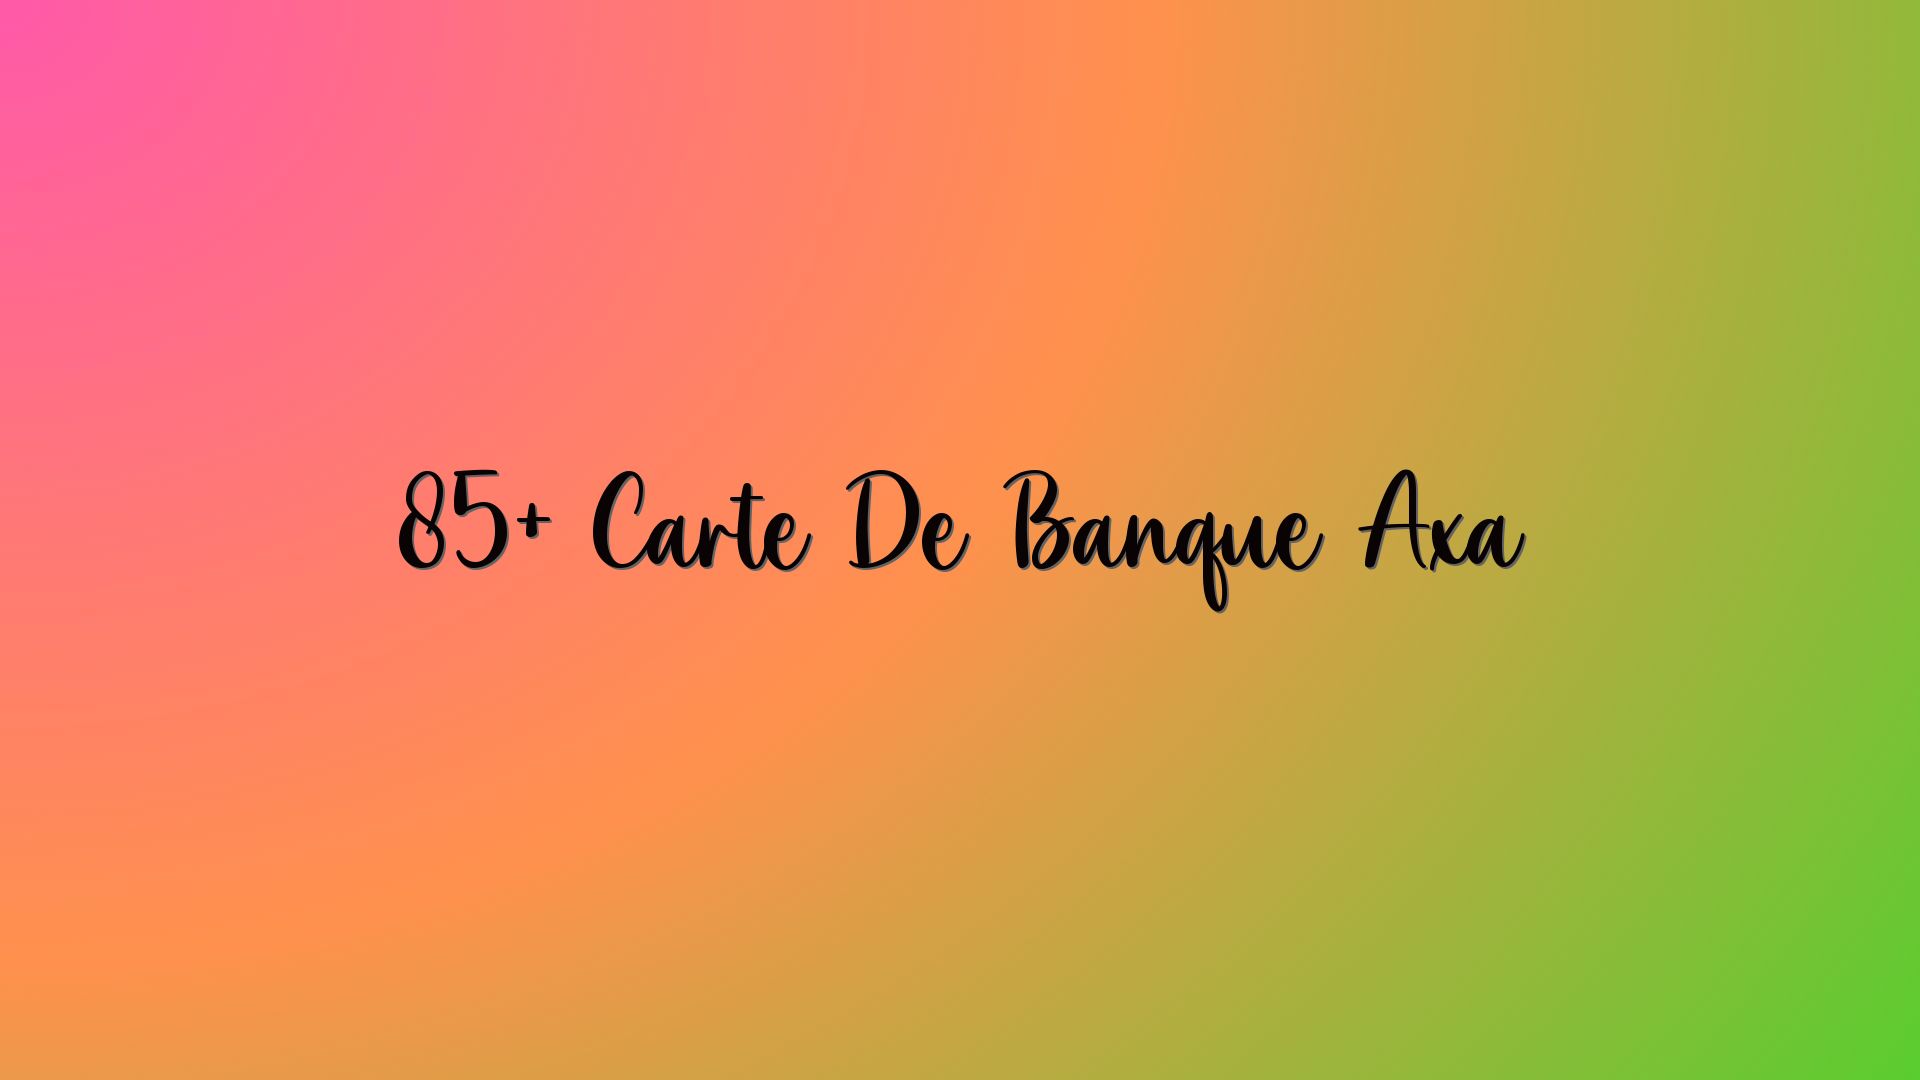 85+ Carte De Banque Axa